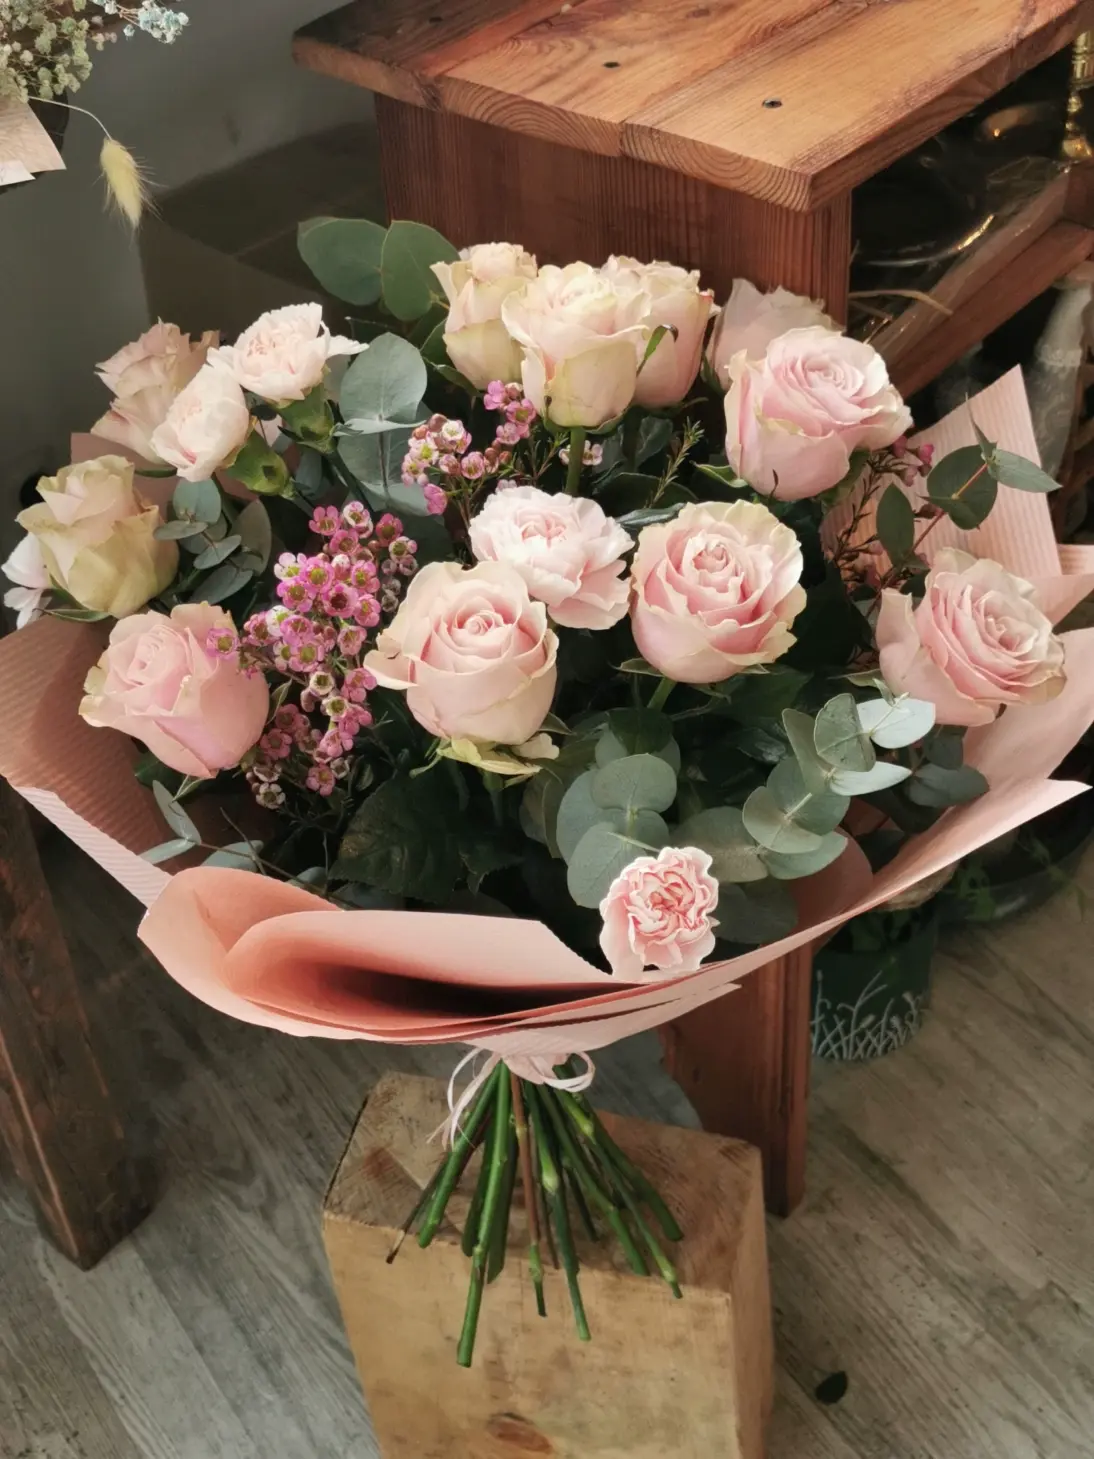 Bukiet z różami to elegancka i romantyczna kompozycja kwiatowa w klasycznym i delikatnym wydaniu.